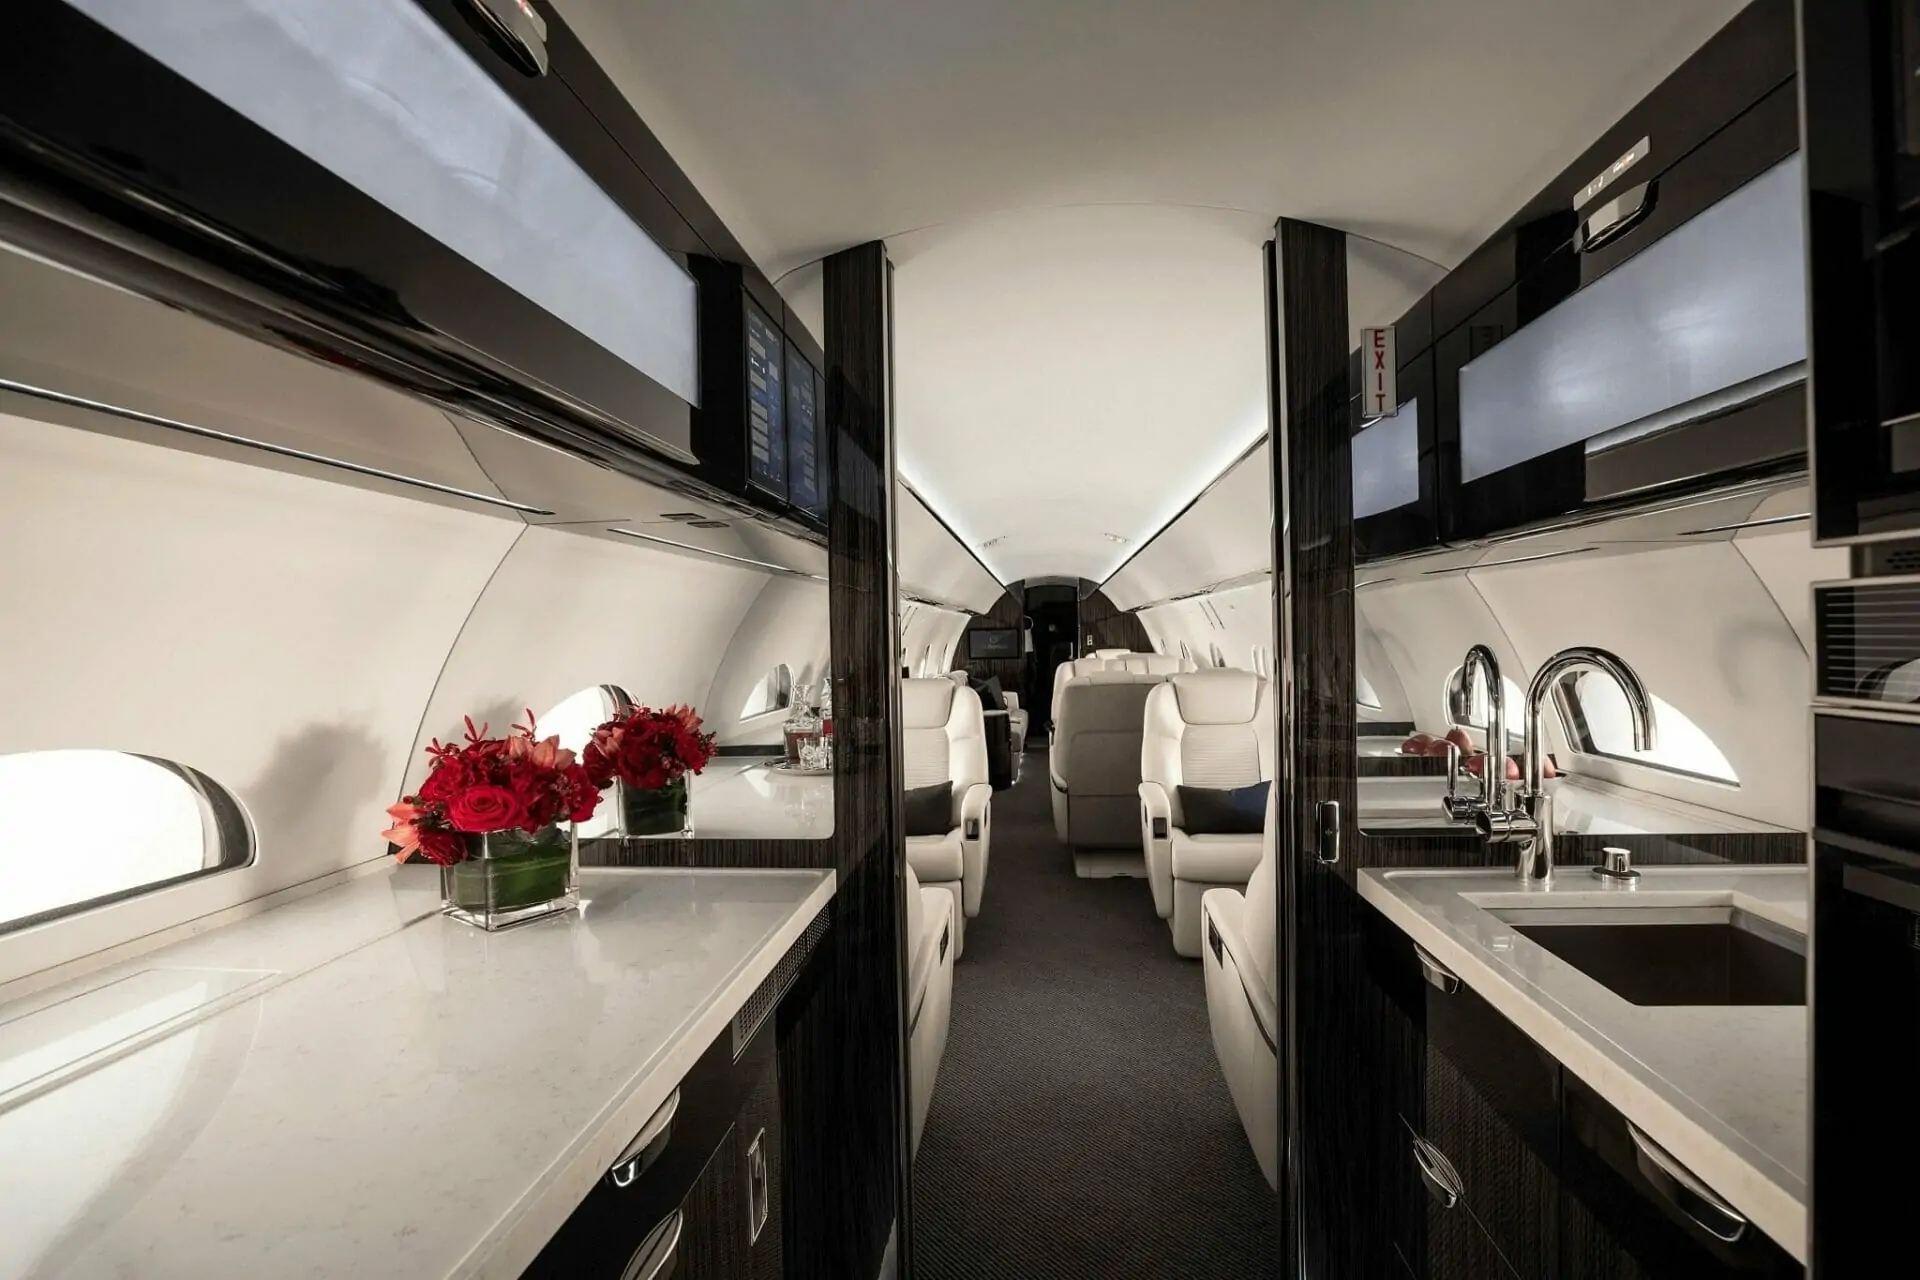 Gulfstream G500 Interior galley